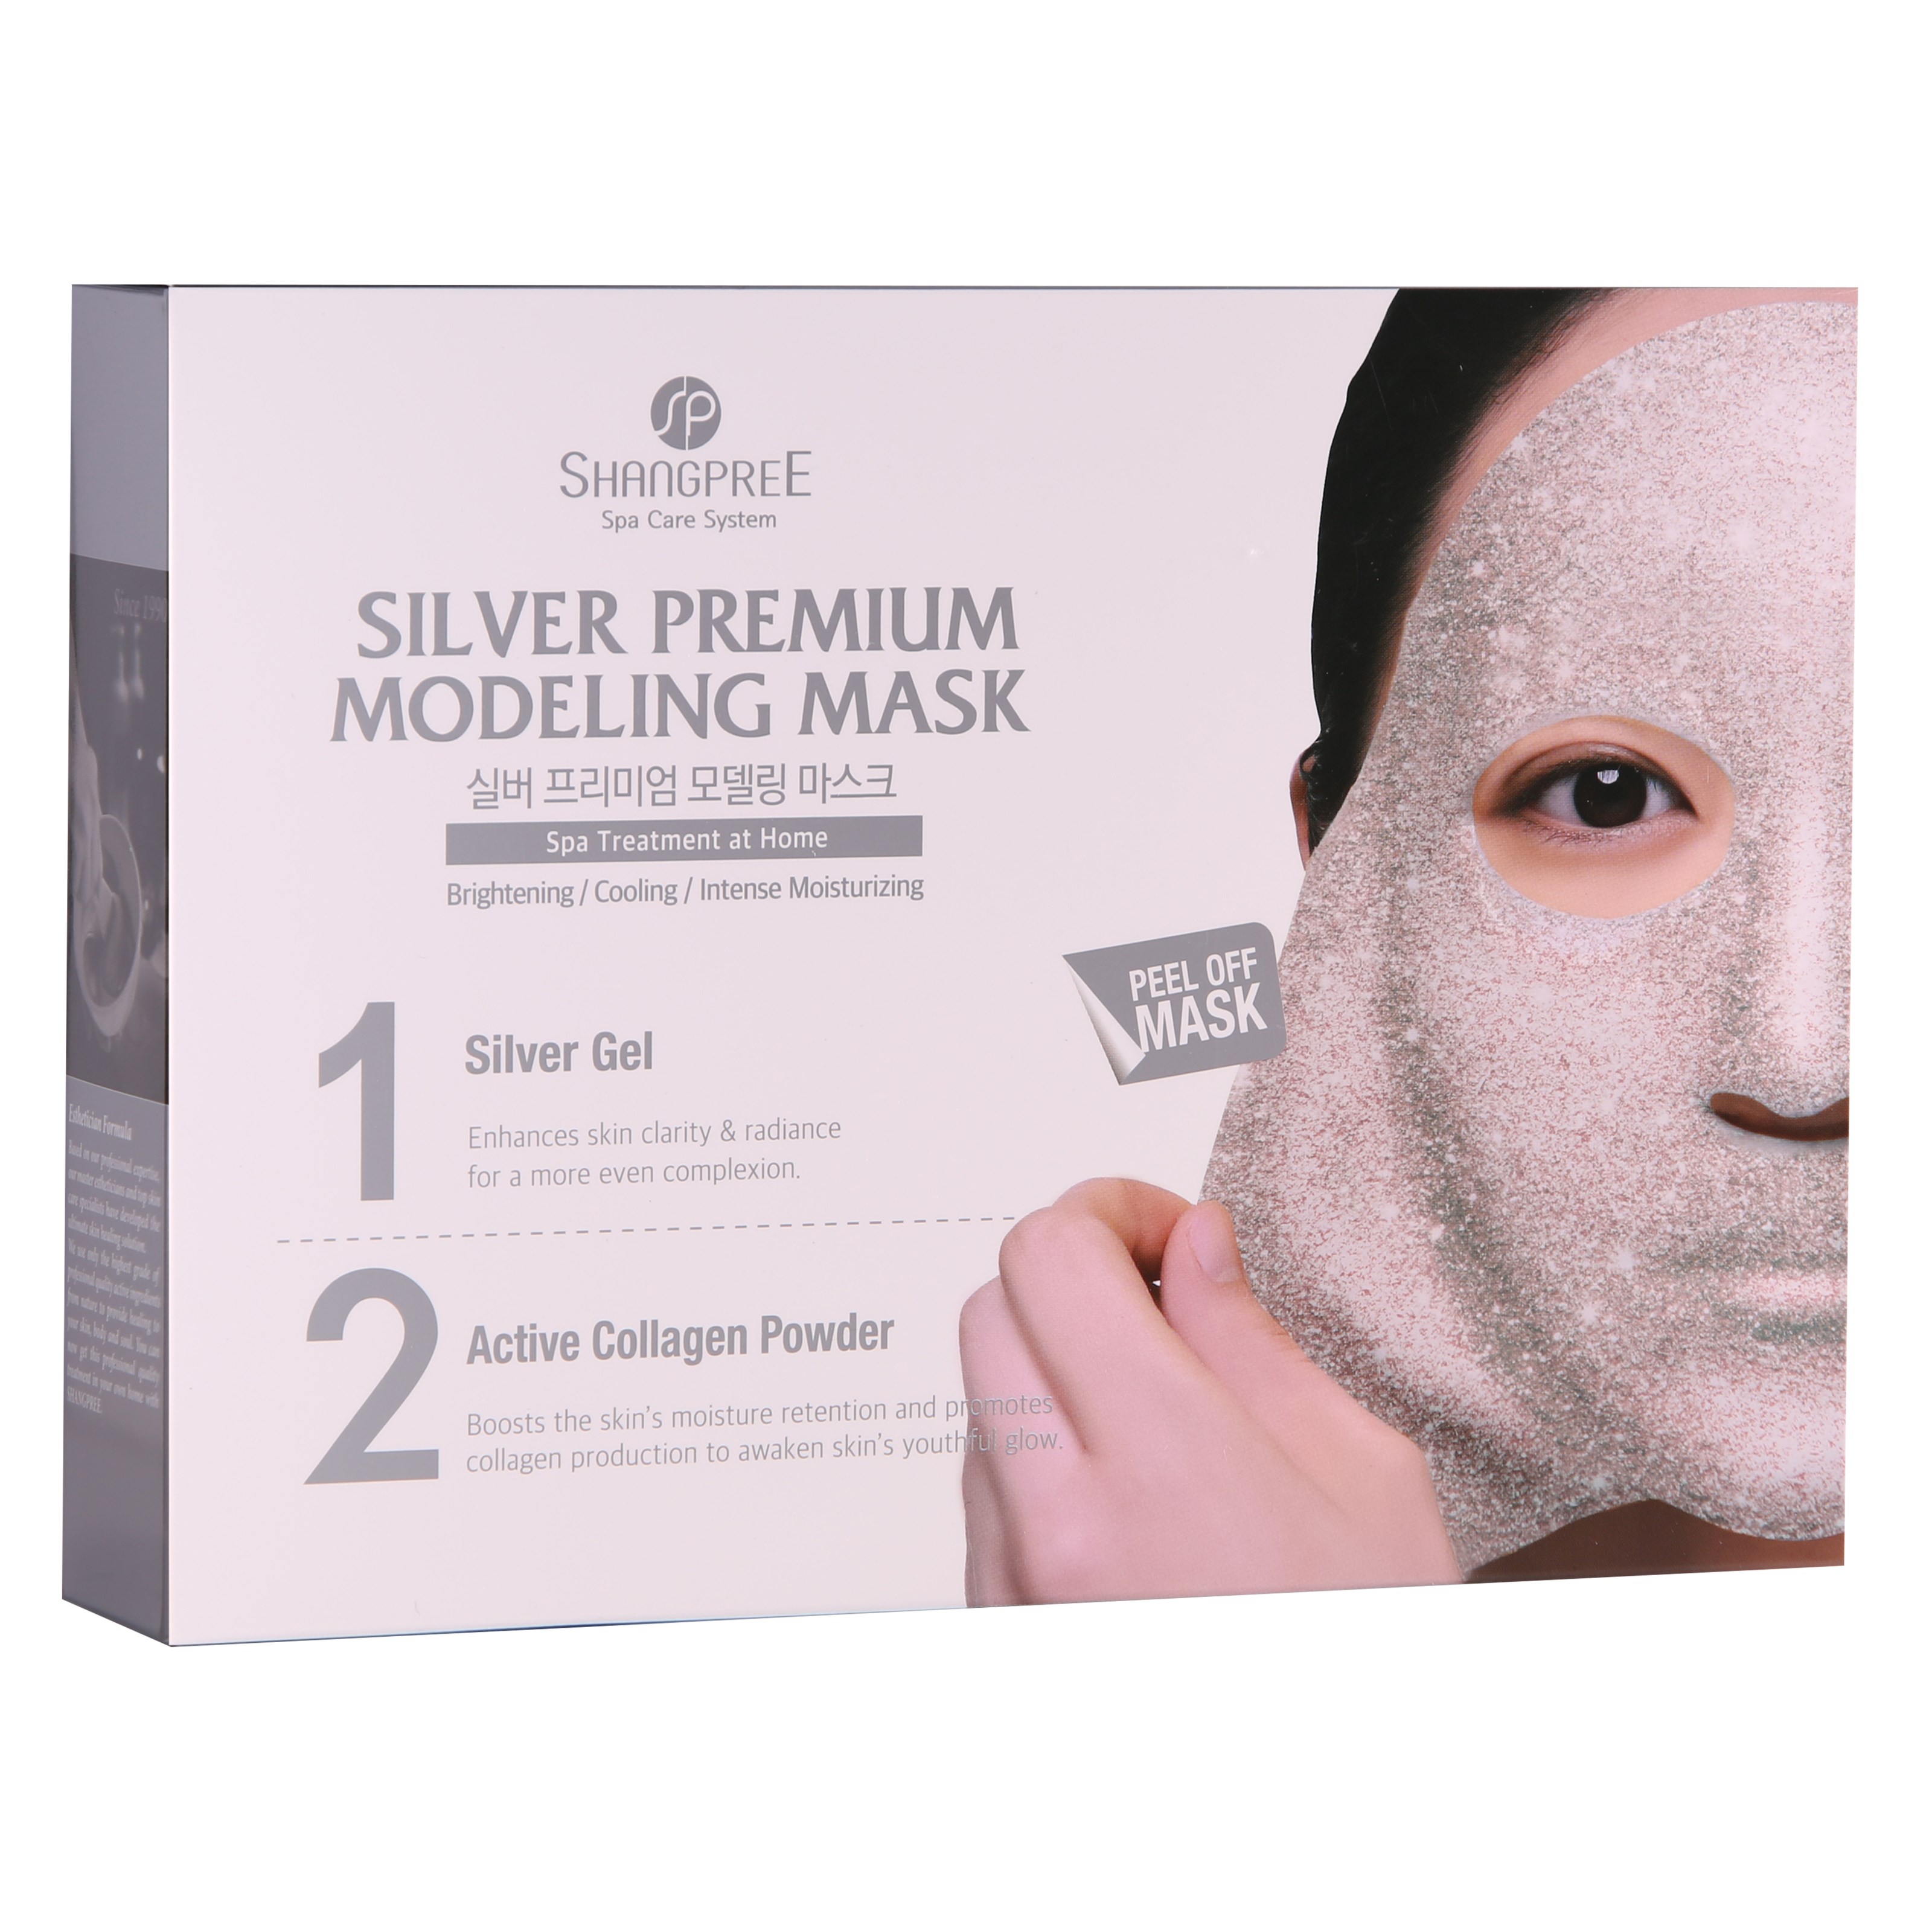 Bilde av Shangpree Premium Modeling Mask Premium Modeling Silver